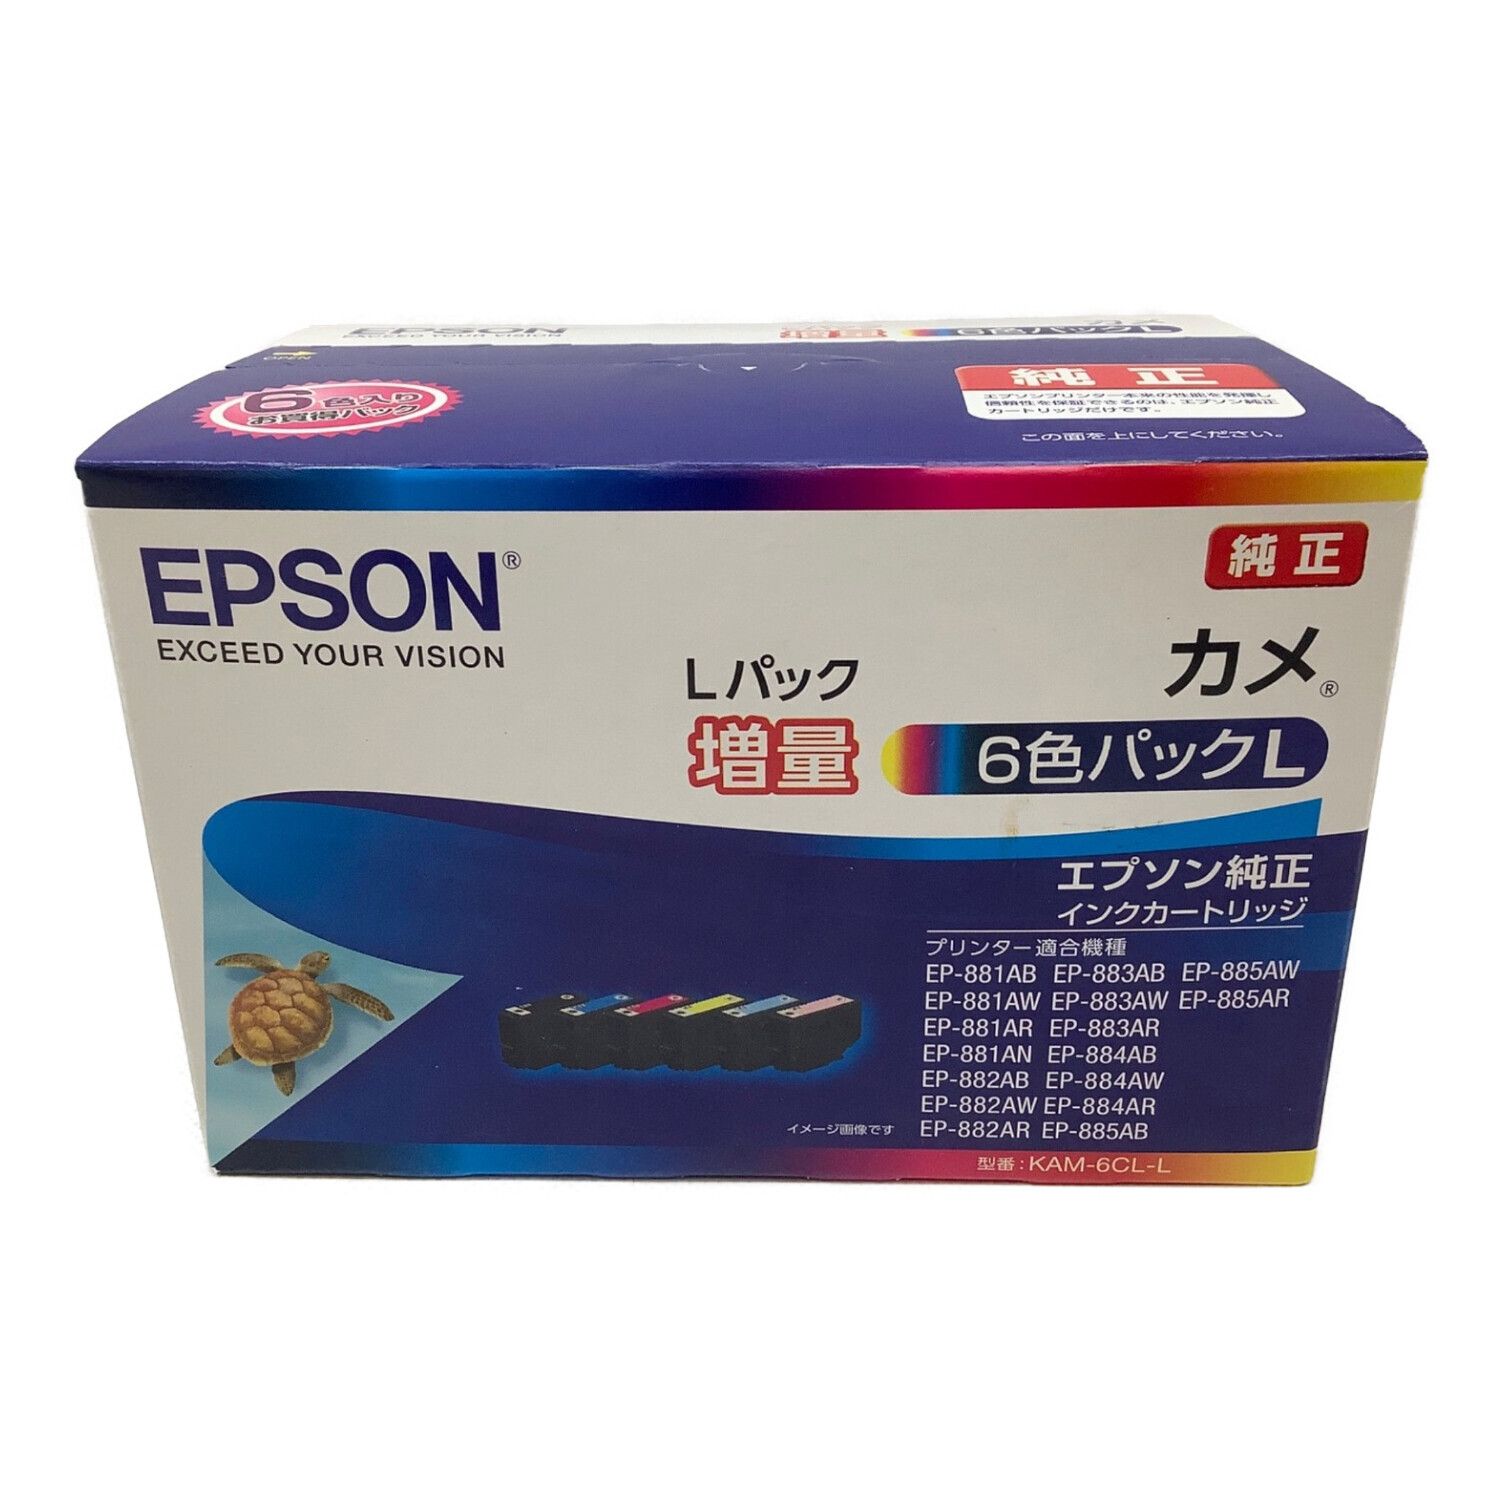 増量新品 エプソン インク KAM-6CL-L カメ 増量 セット EPSON